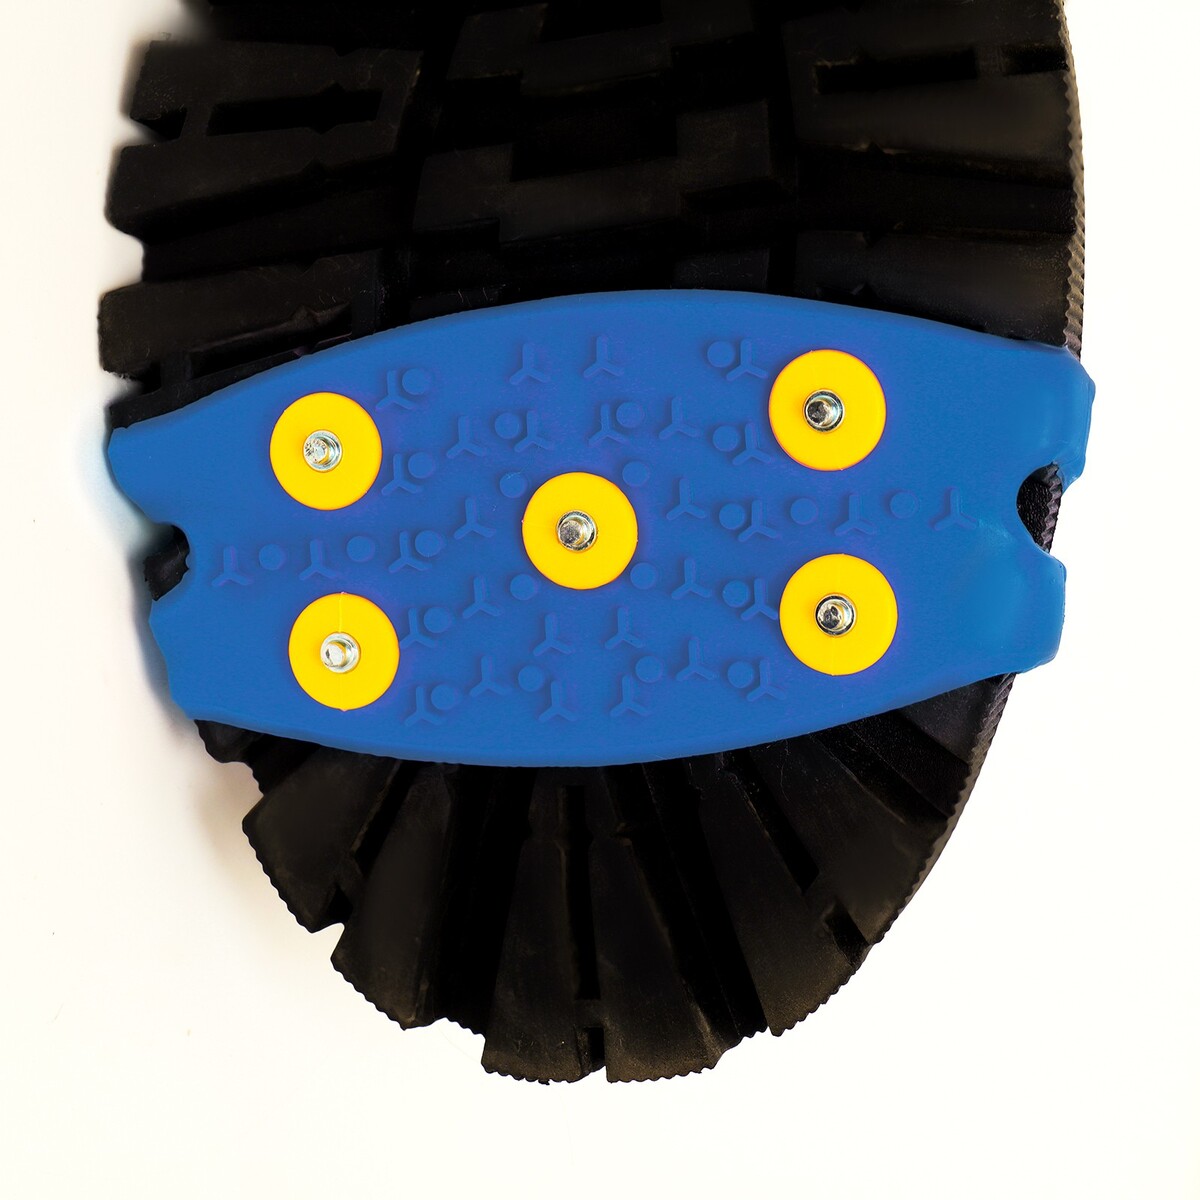 Шипы для обуви на толстой резине 5 шипов, универсальные, синие No brand 05610000 - фото 3